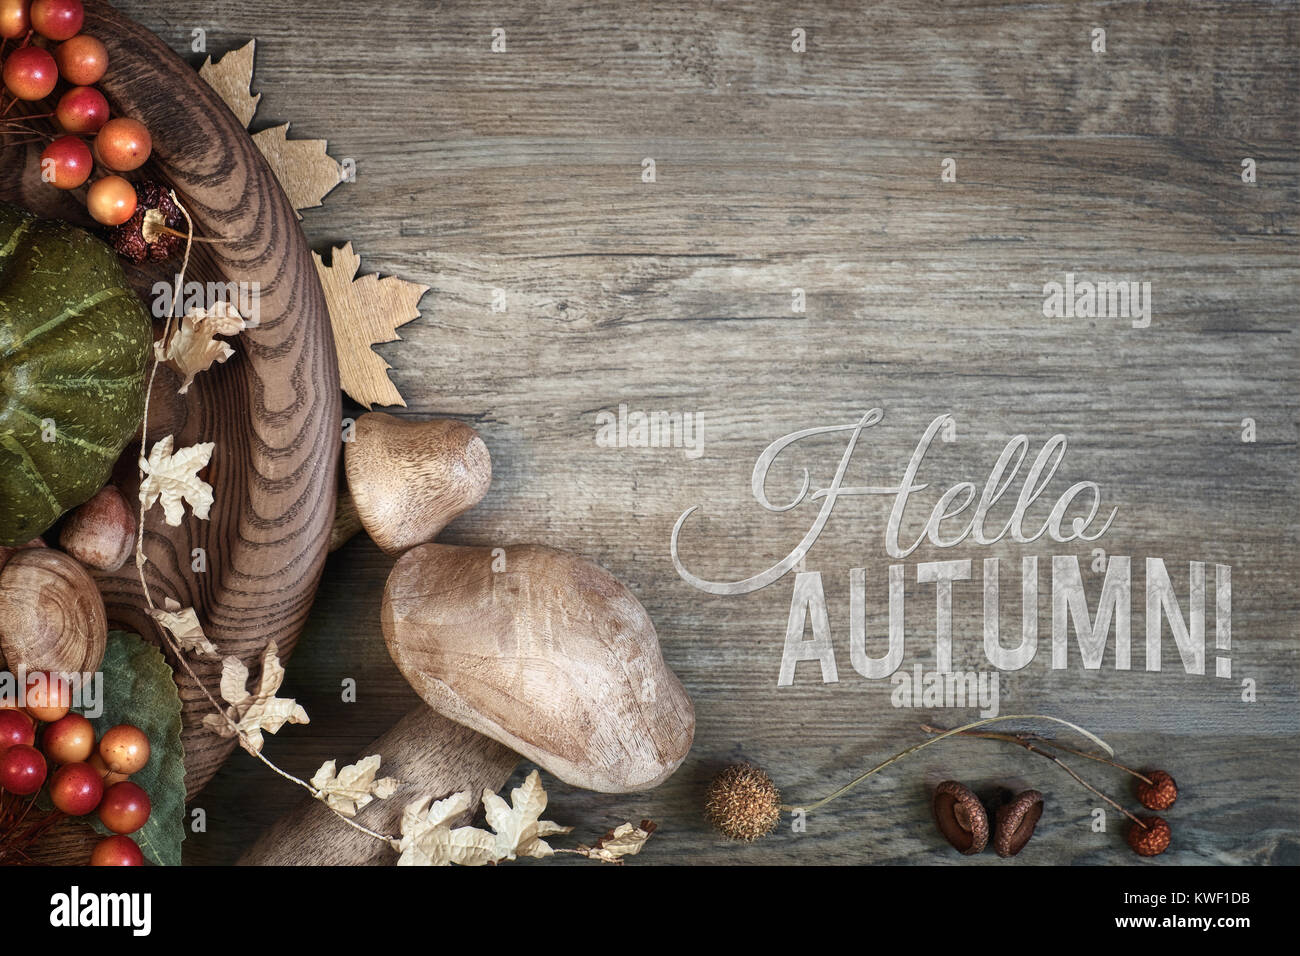 Herbst Hintergrund mit Fall trocken Dekorationen auf Holz. Ansicht von oben, getönten Bild, auf den Dekorationen konzentrieren. Caption "Hallo Herbst!" Stockfoto